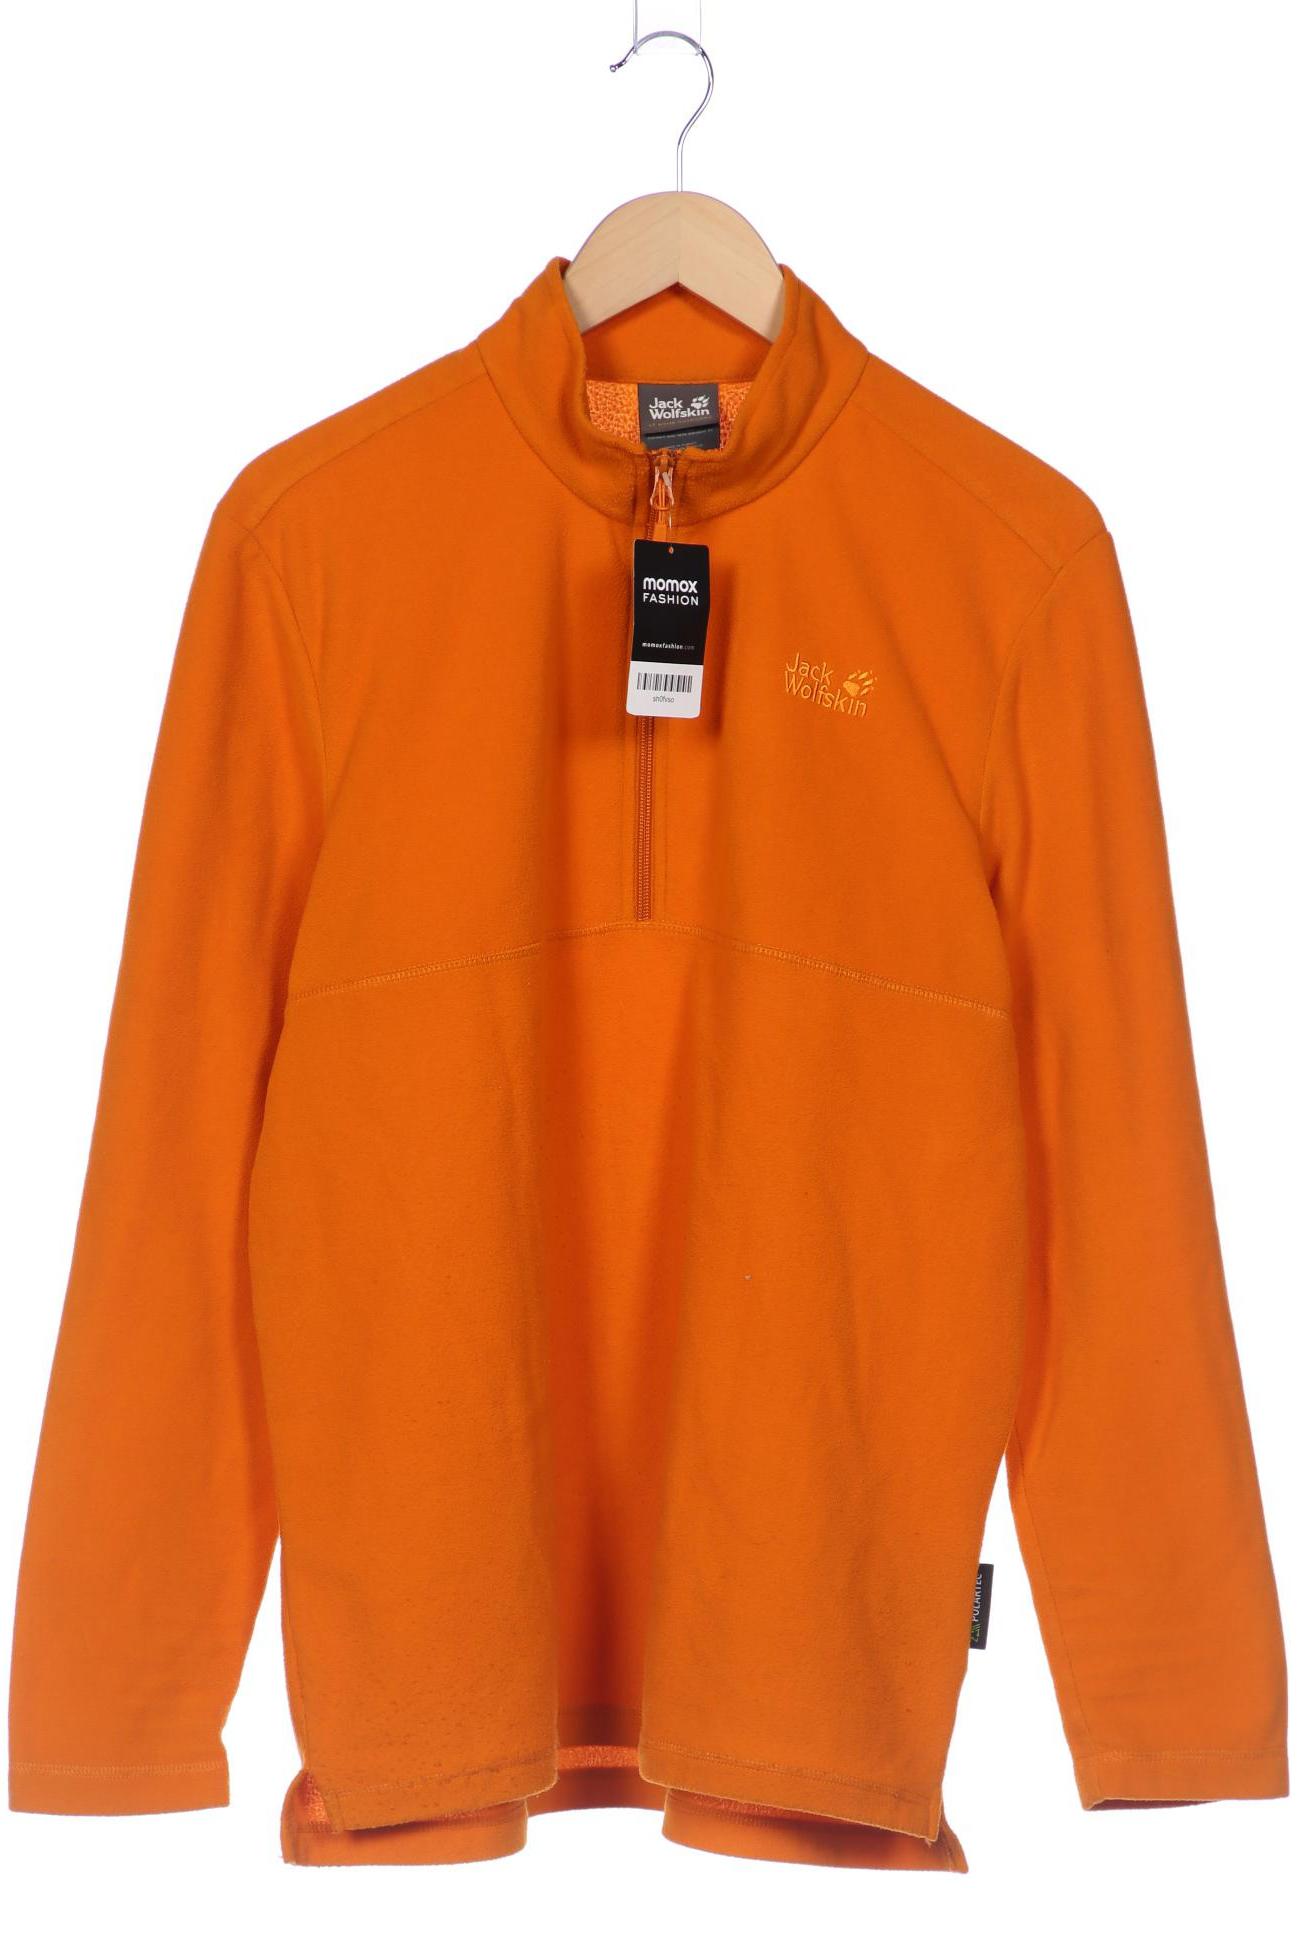 Jack Wolfskin Herren Sweatshirt, orange von Jack Wolfskin